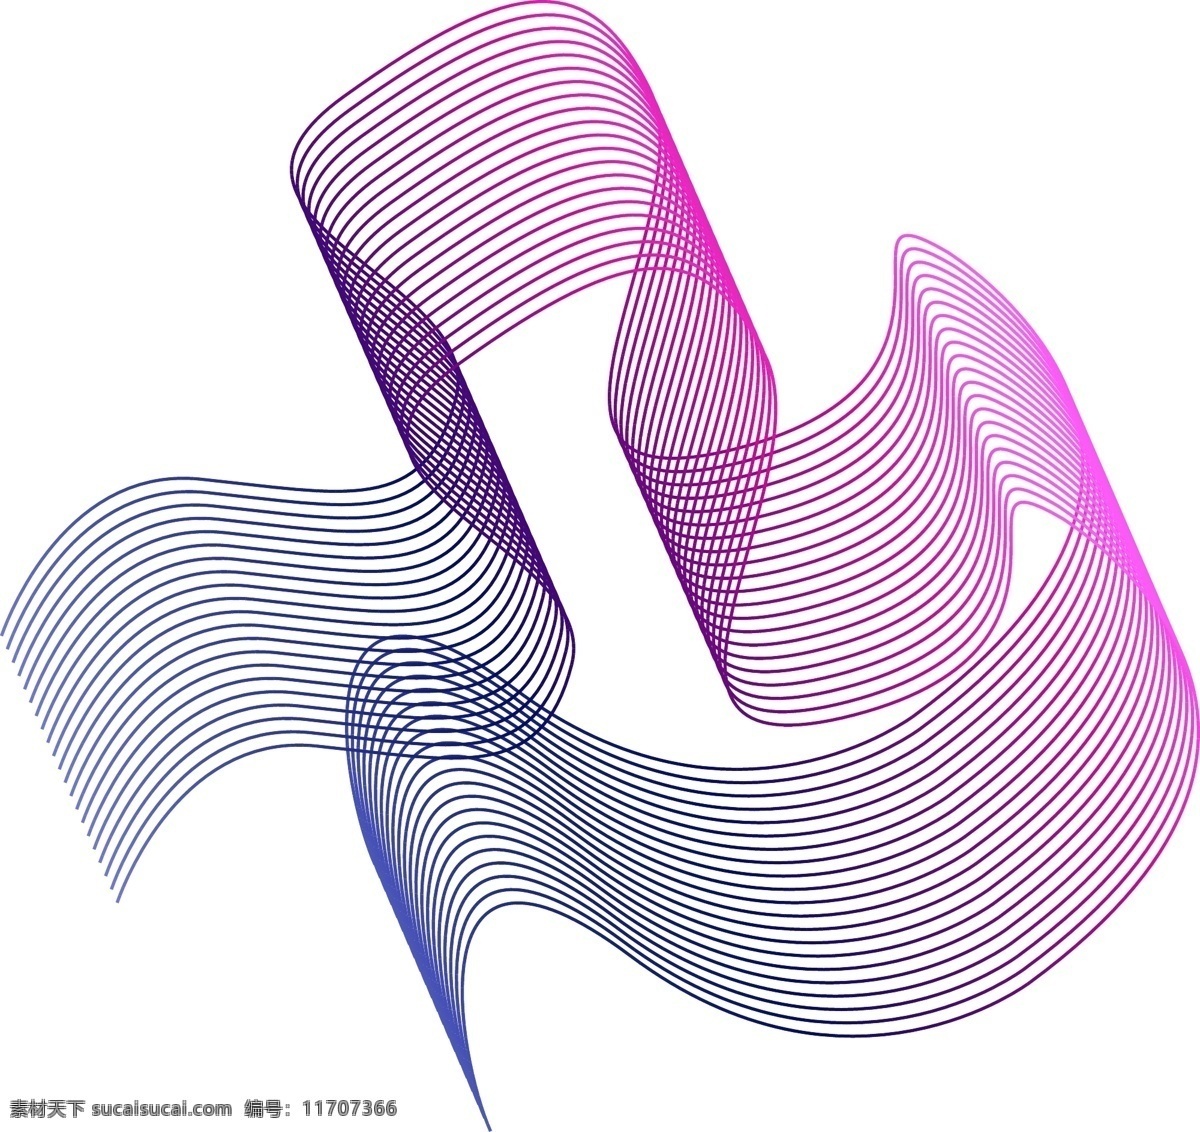 酷 炫 抽象 渐变 线条 元素 炫酷 抽象线条 渐变线条 创意 蓝紫色 科技风